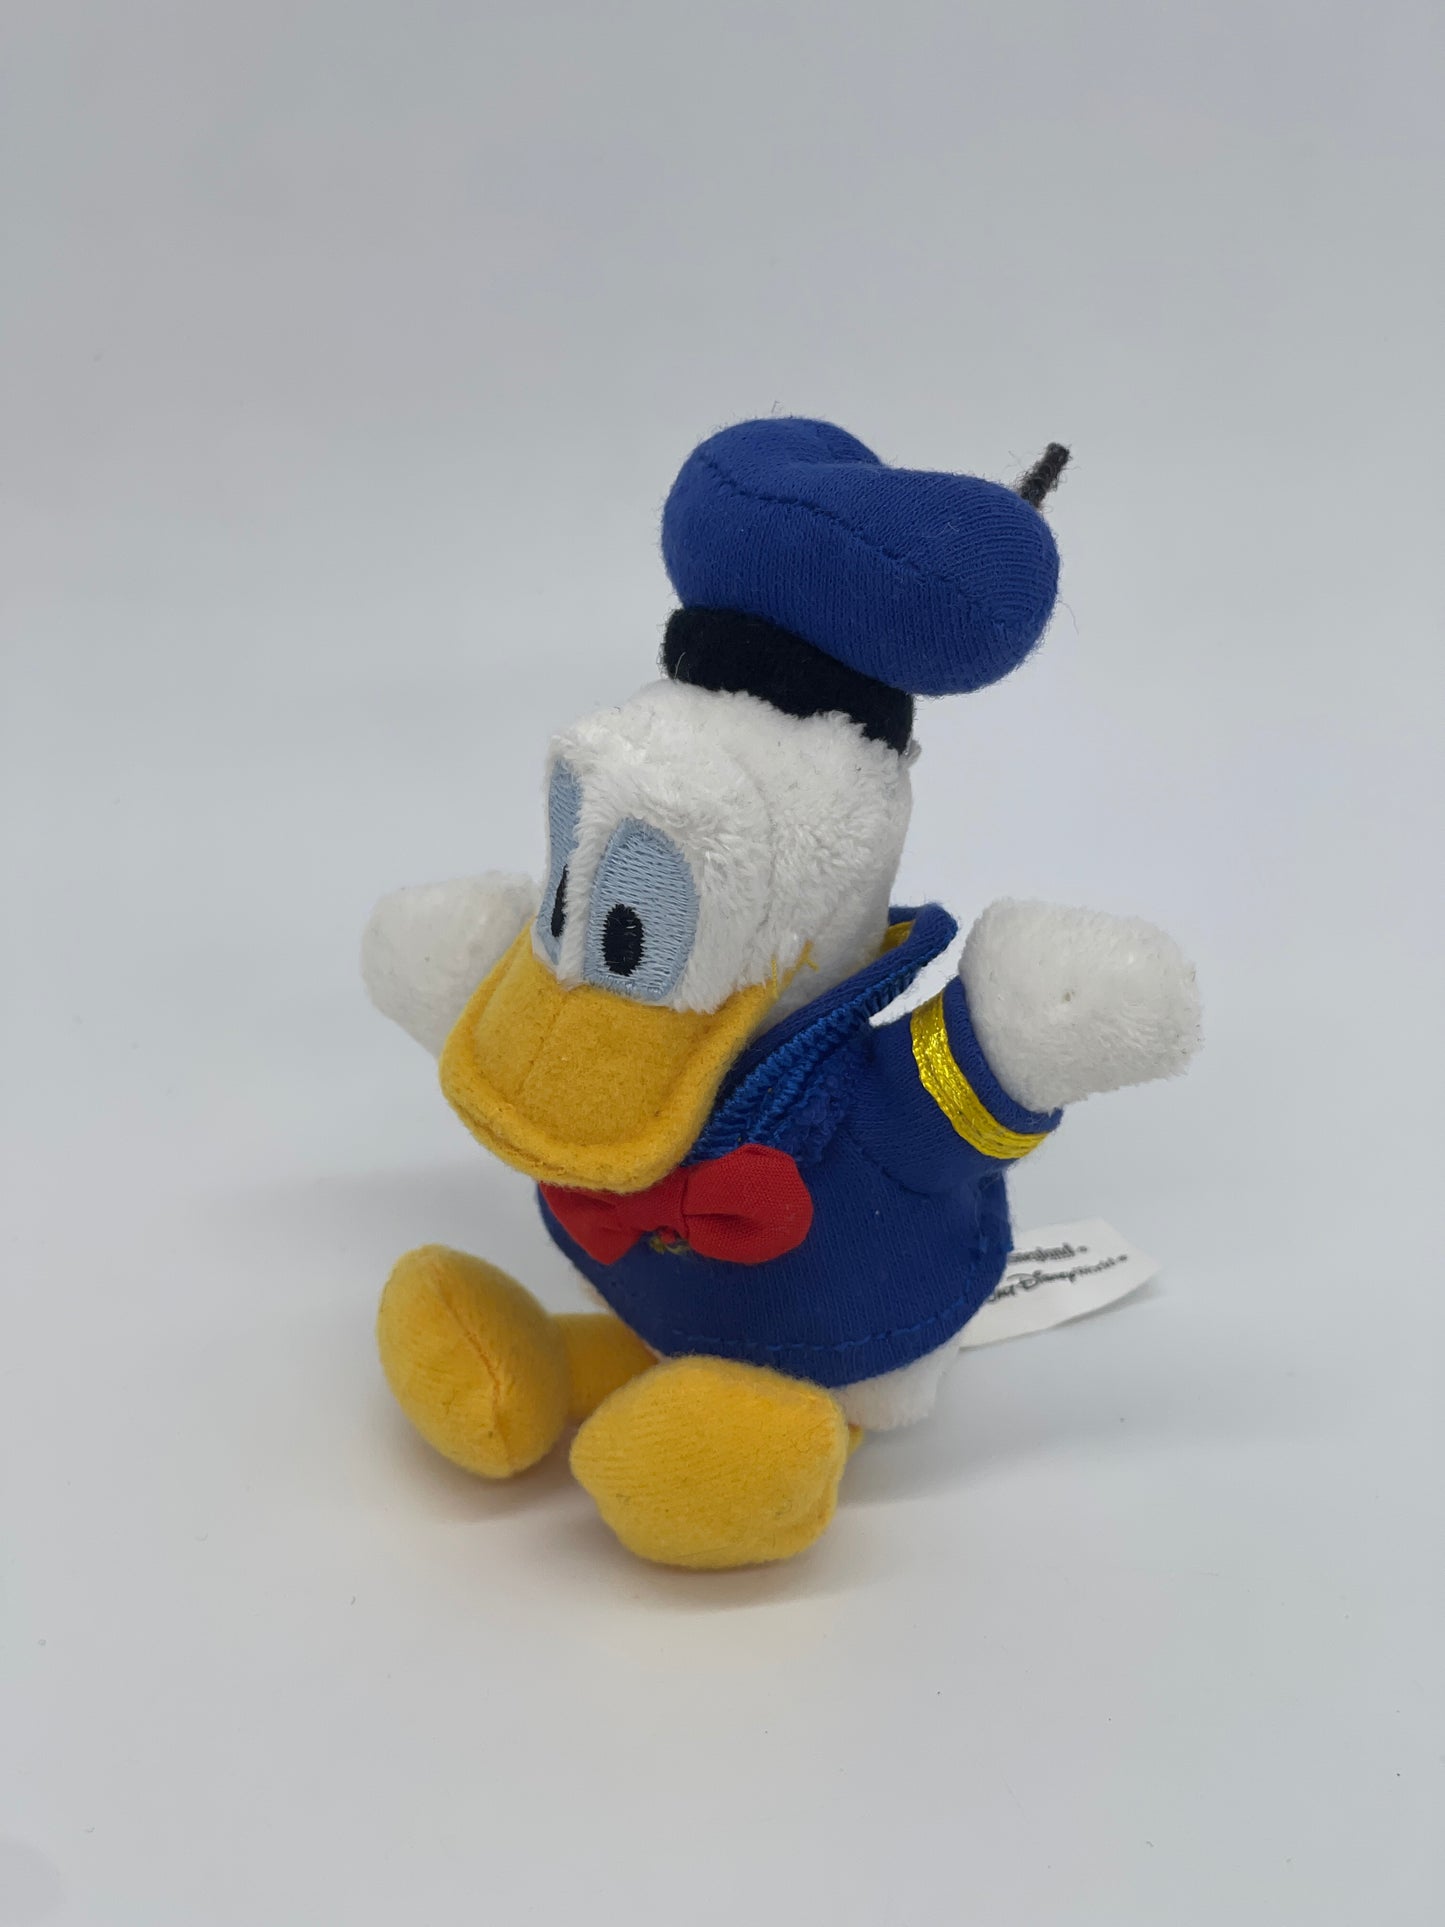 Plüschfigur "Donald Duck" Walt Disney World Disneyland Resort Parks USA